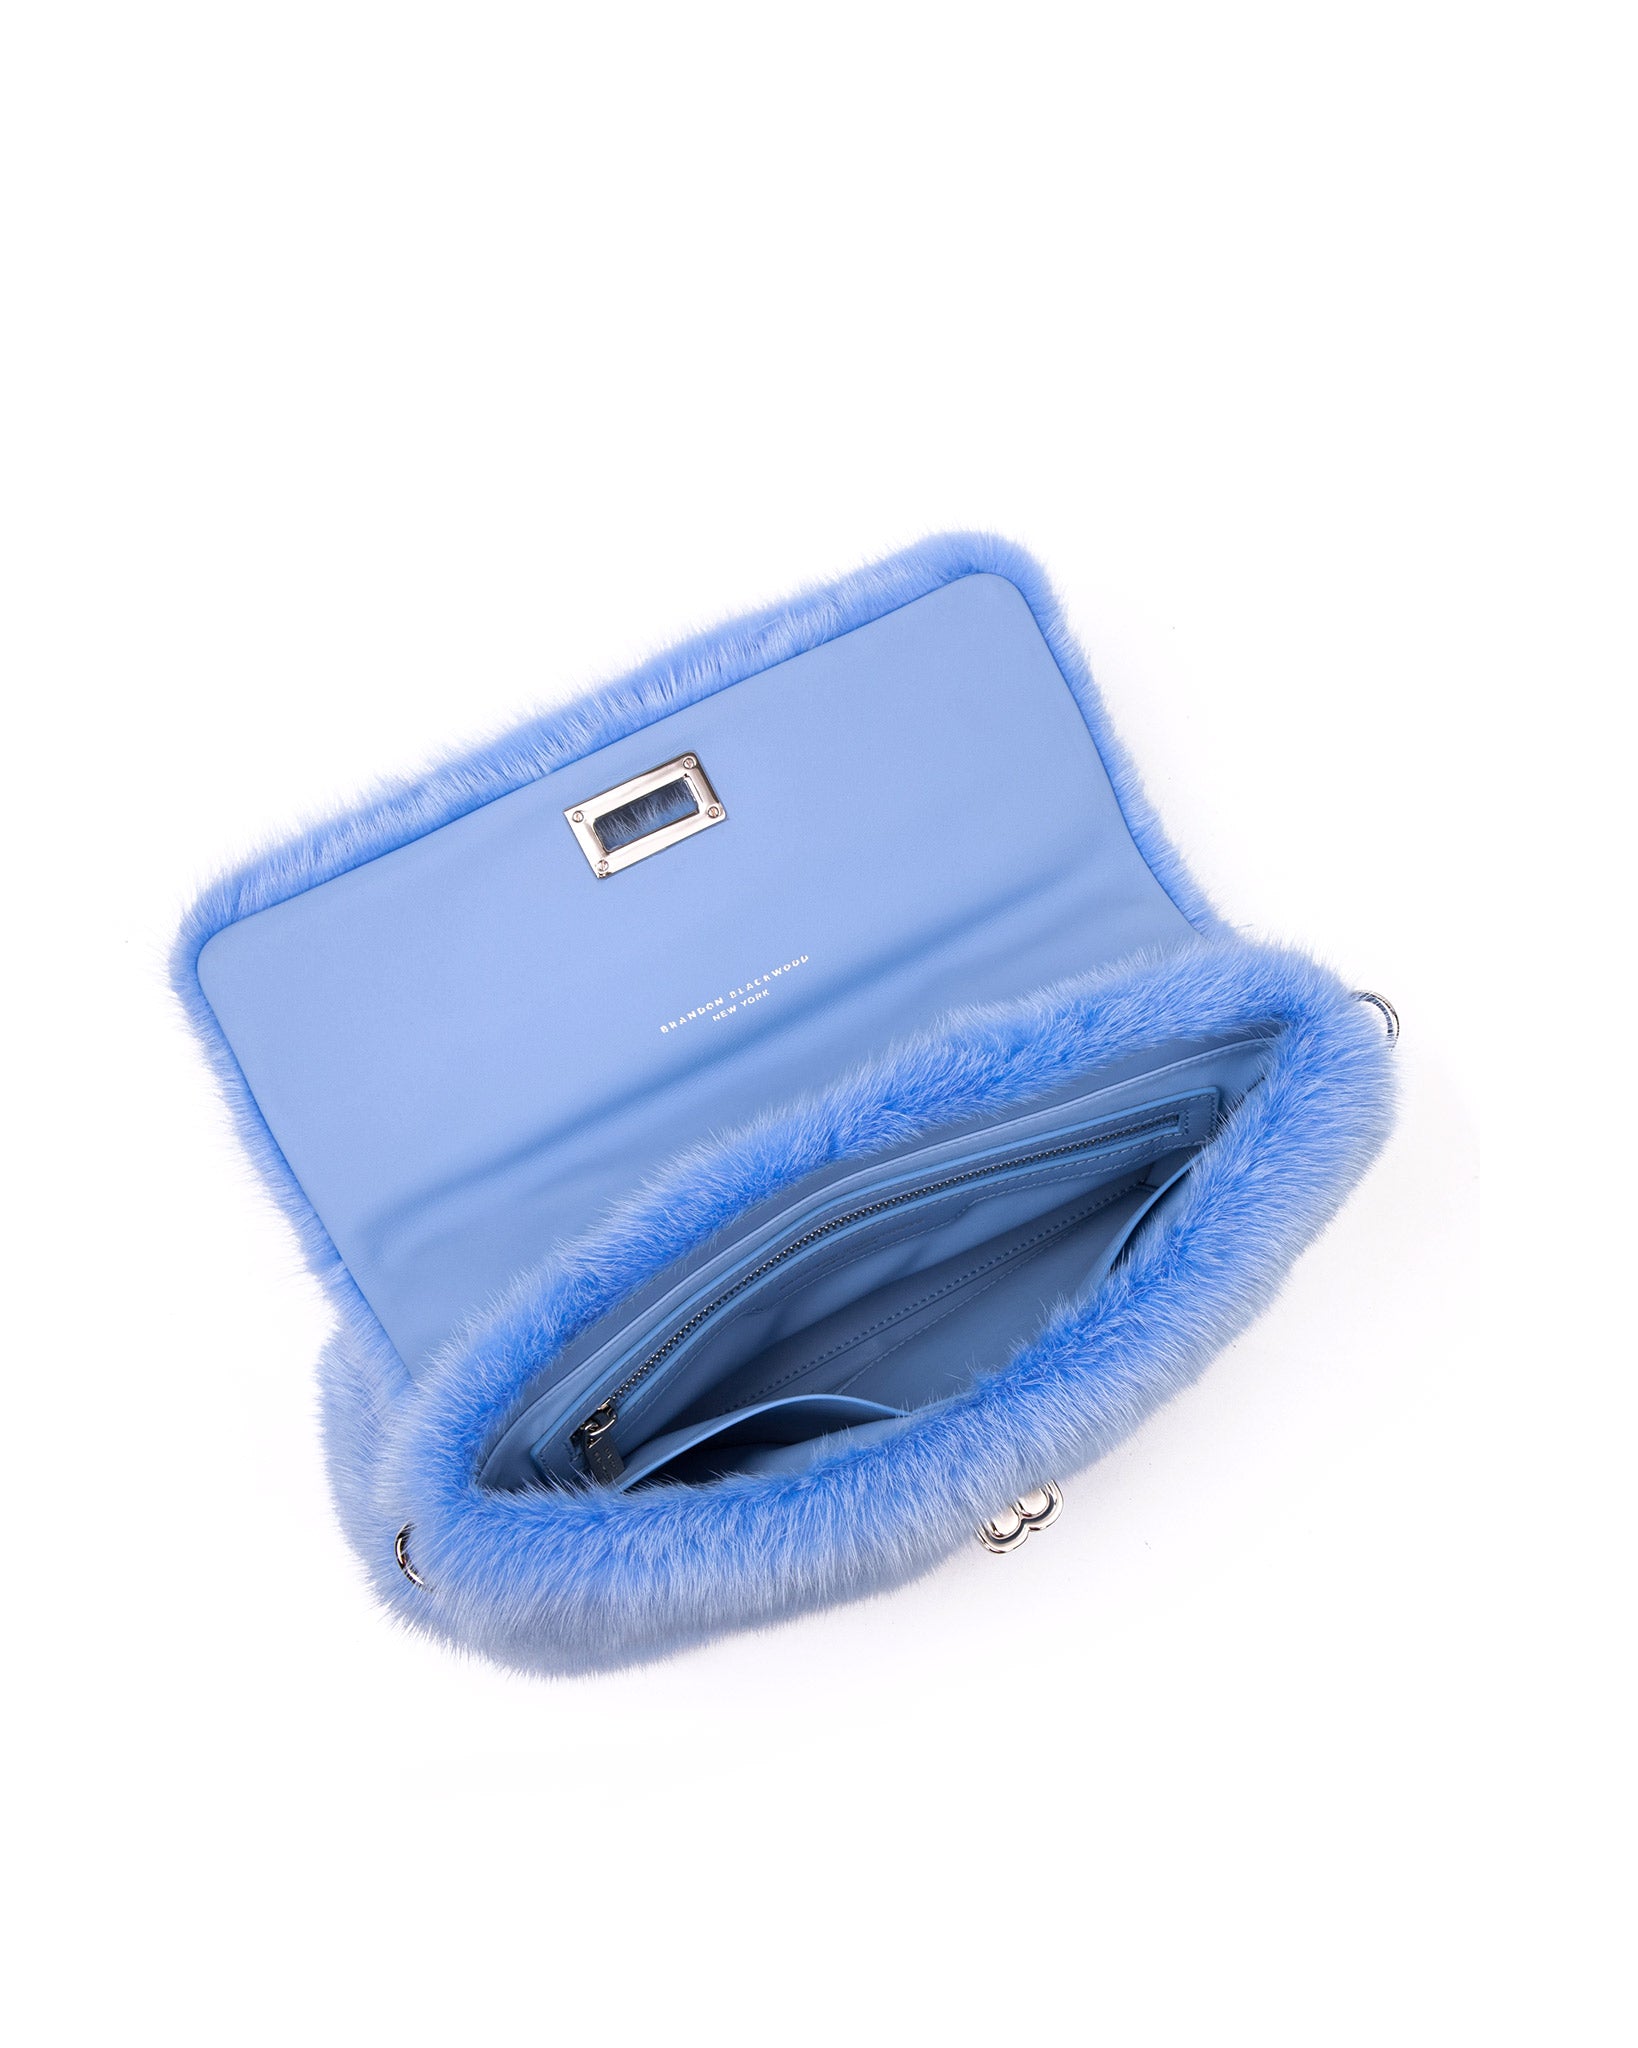 Brandon Blackwood New York - Lisa Shoulder Bag - Blue Mink w/ Silver Hardware